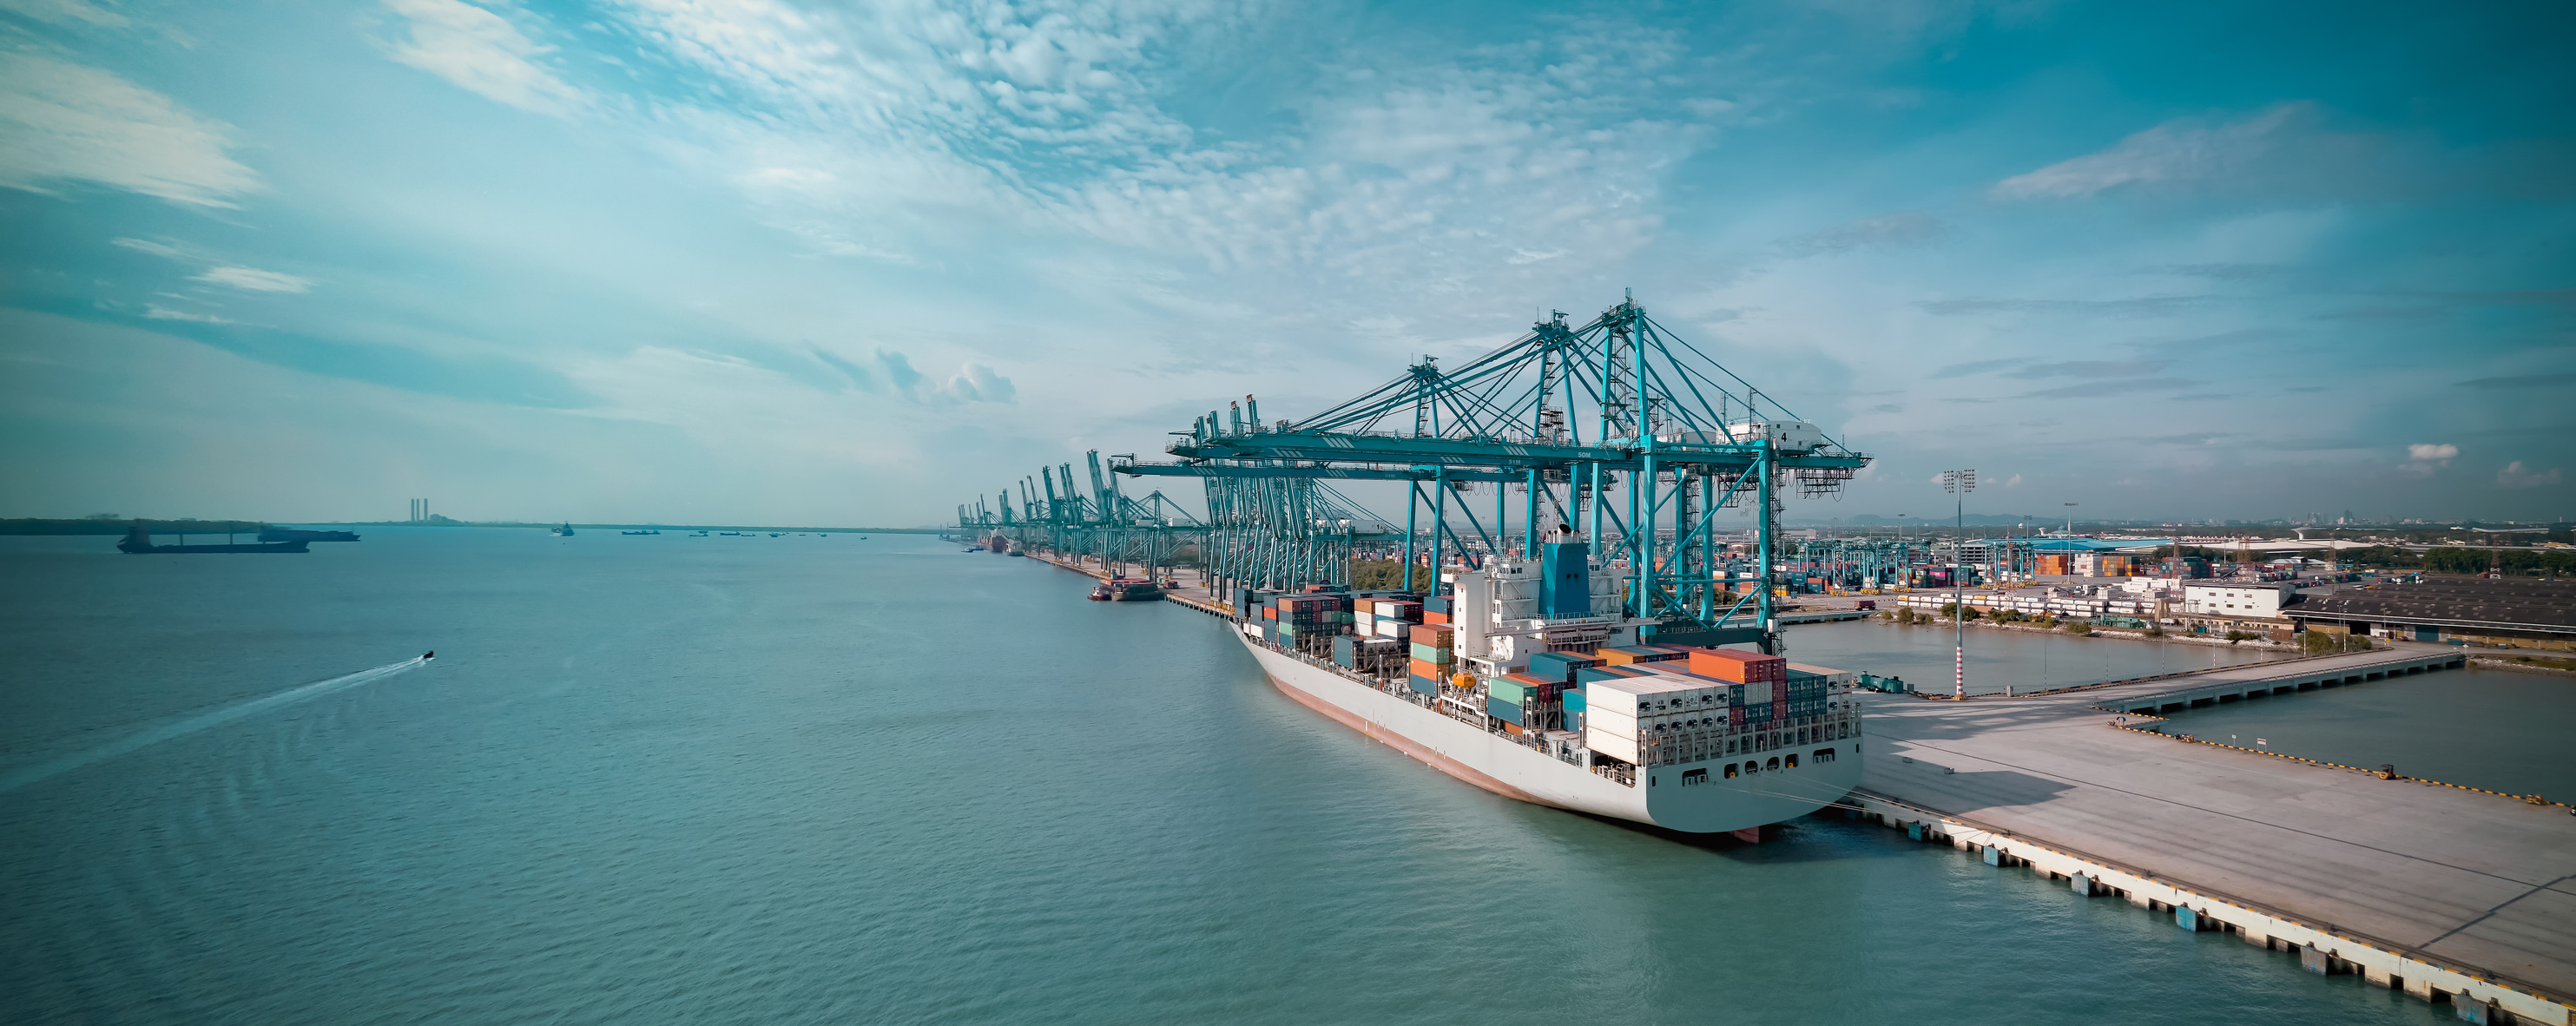 Logistics Container Cargo Ship